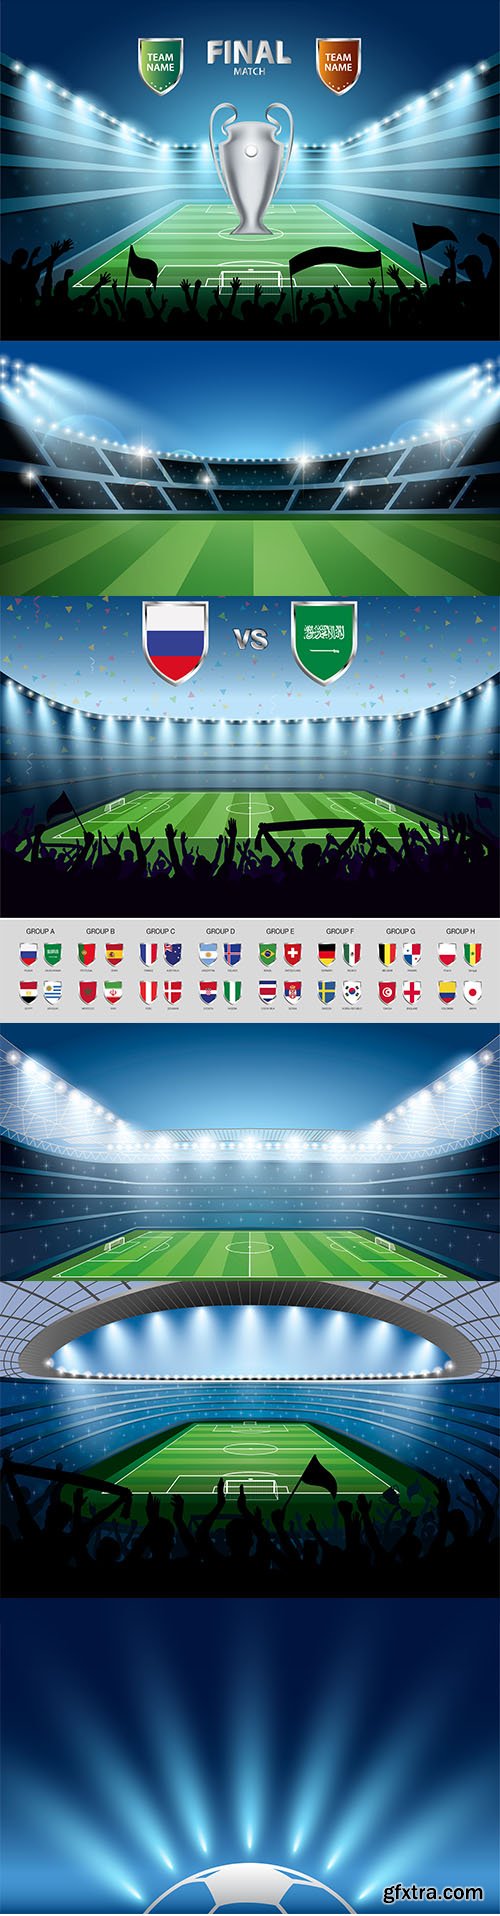 Vector Set of Soccer Stadium Illustrations